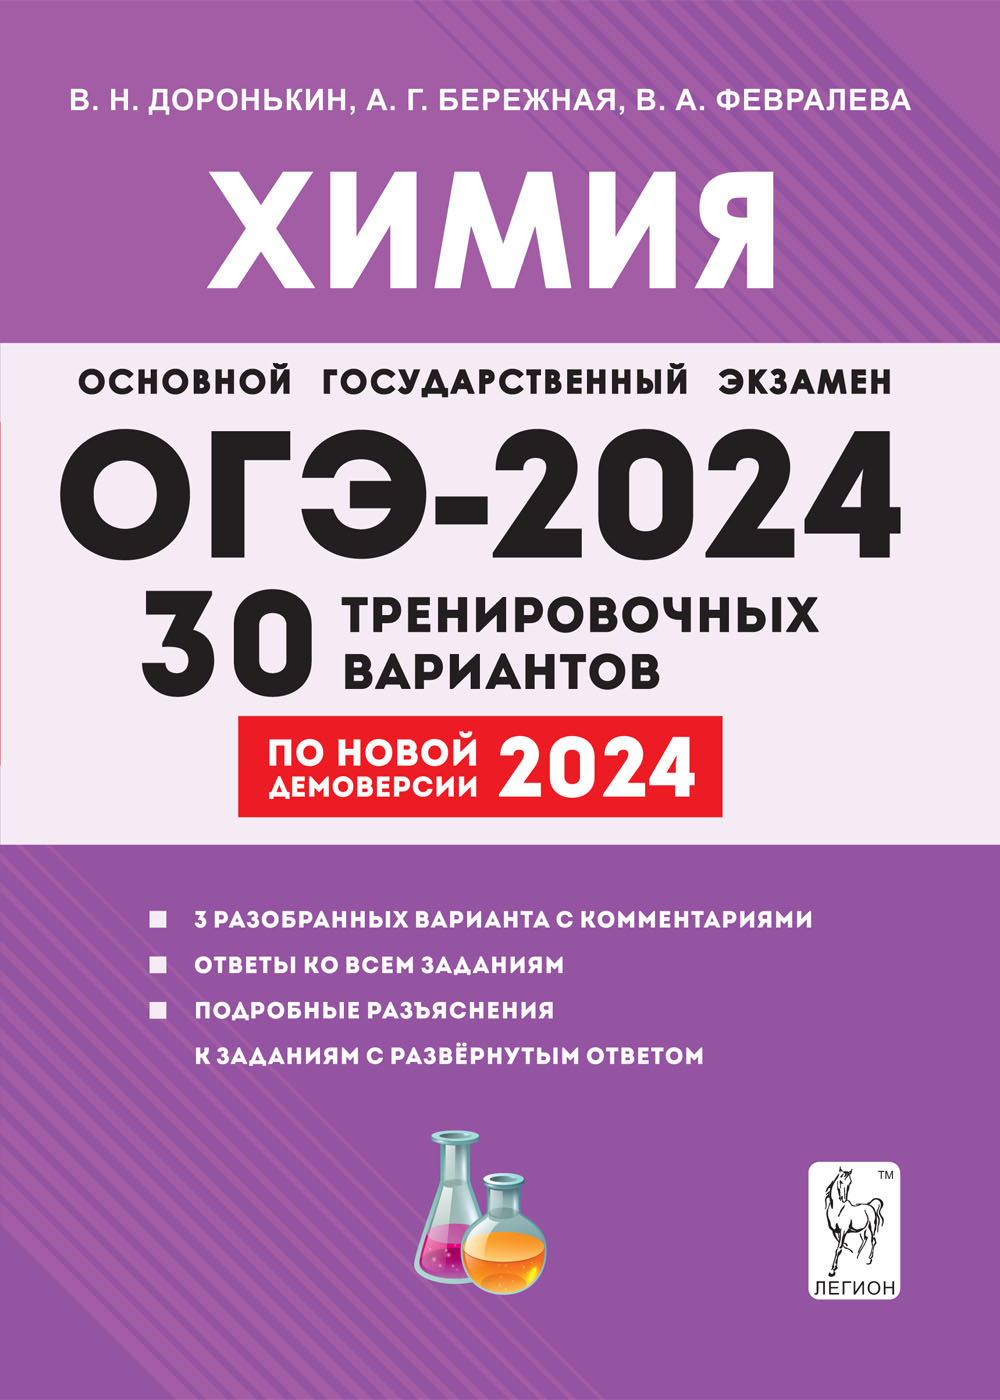 Химия. Подготовка к ОГЭ-2024. 9-й класс. 30 тренировочных вариантов по демоверсии 2024 года